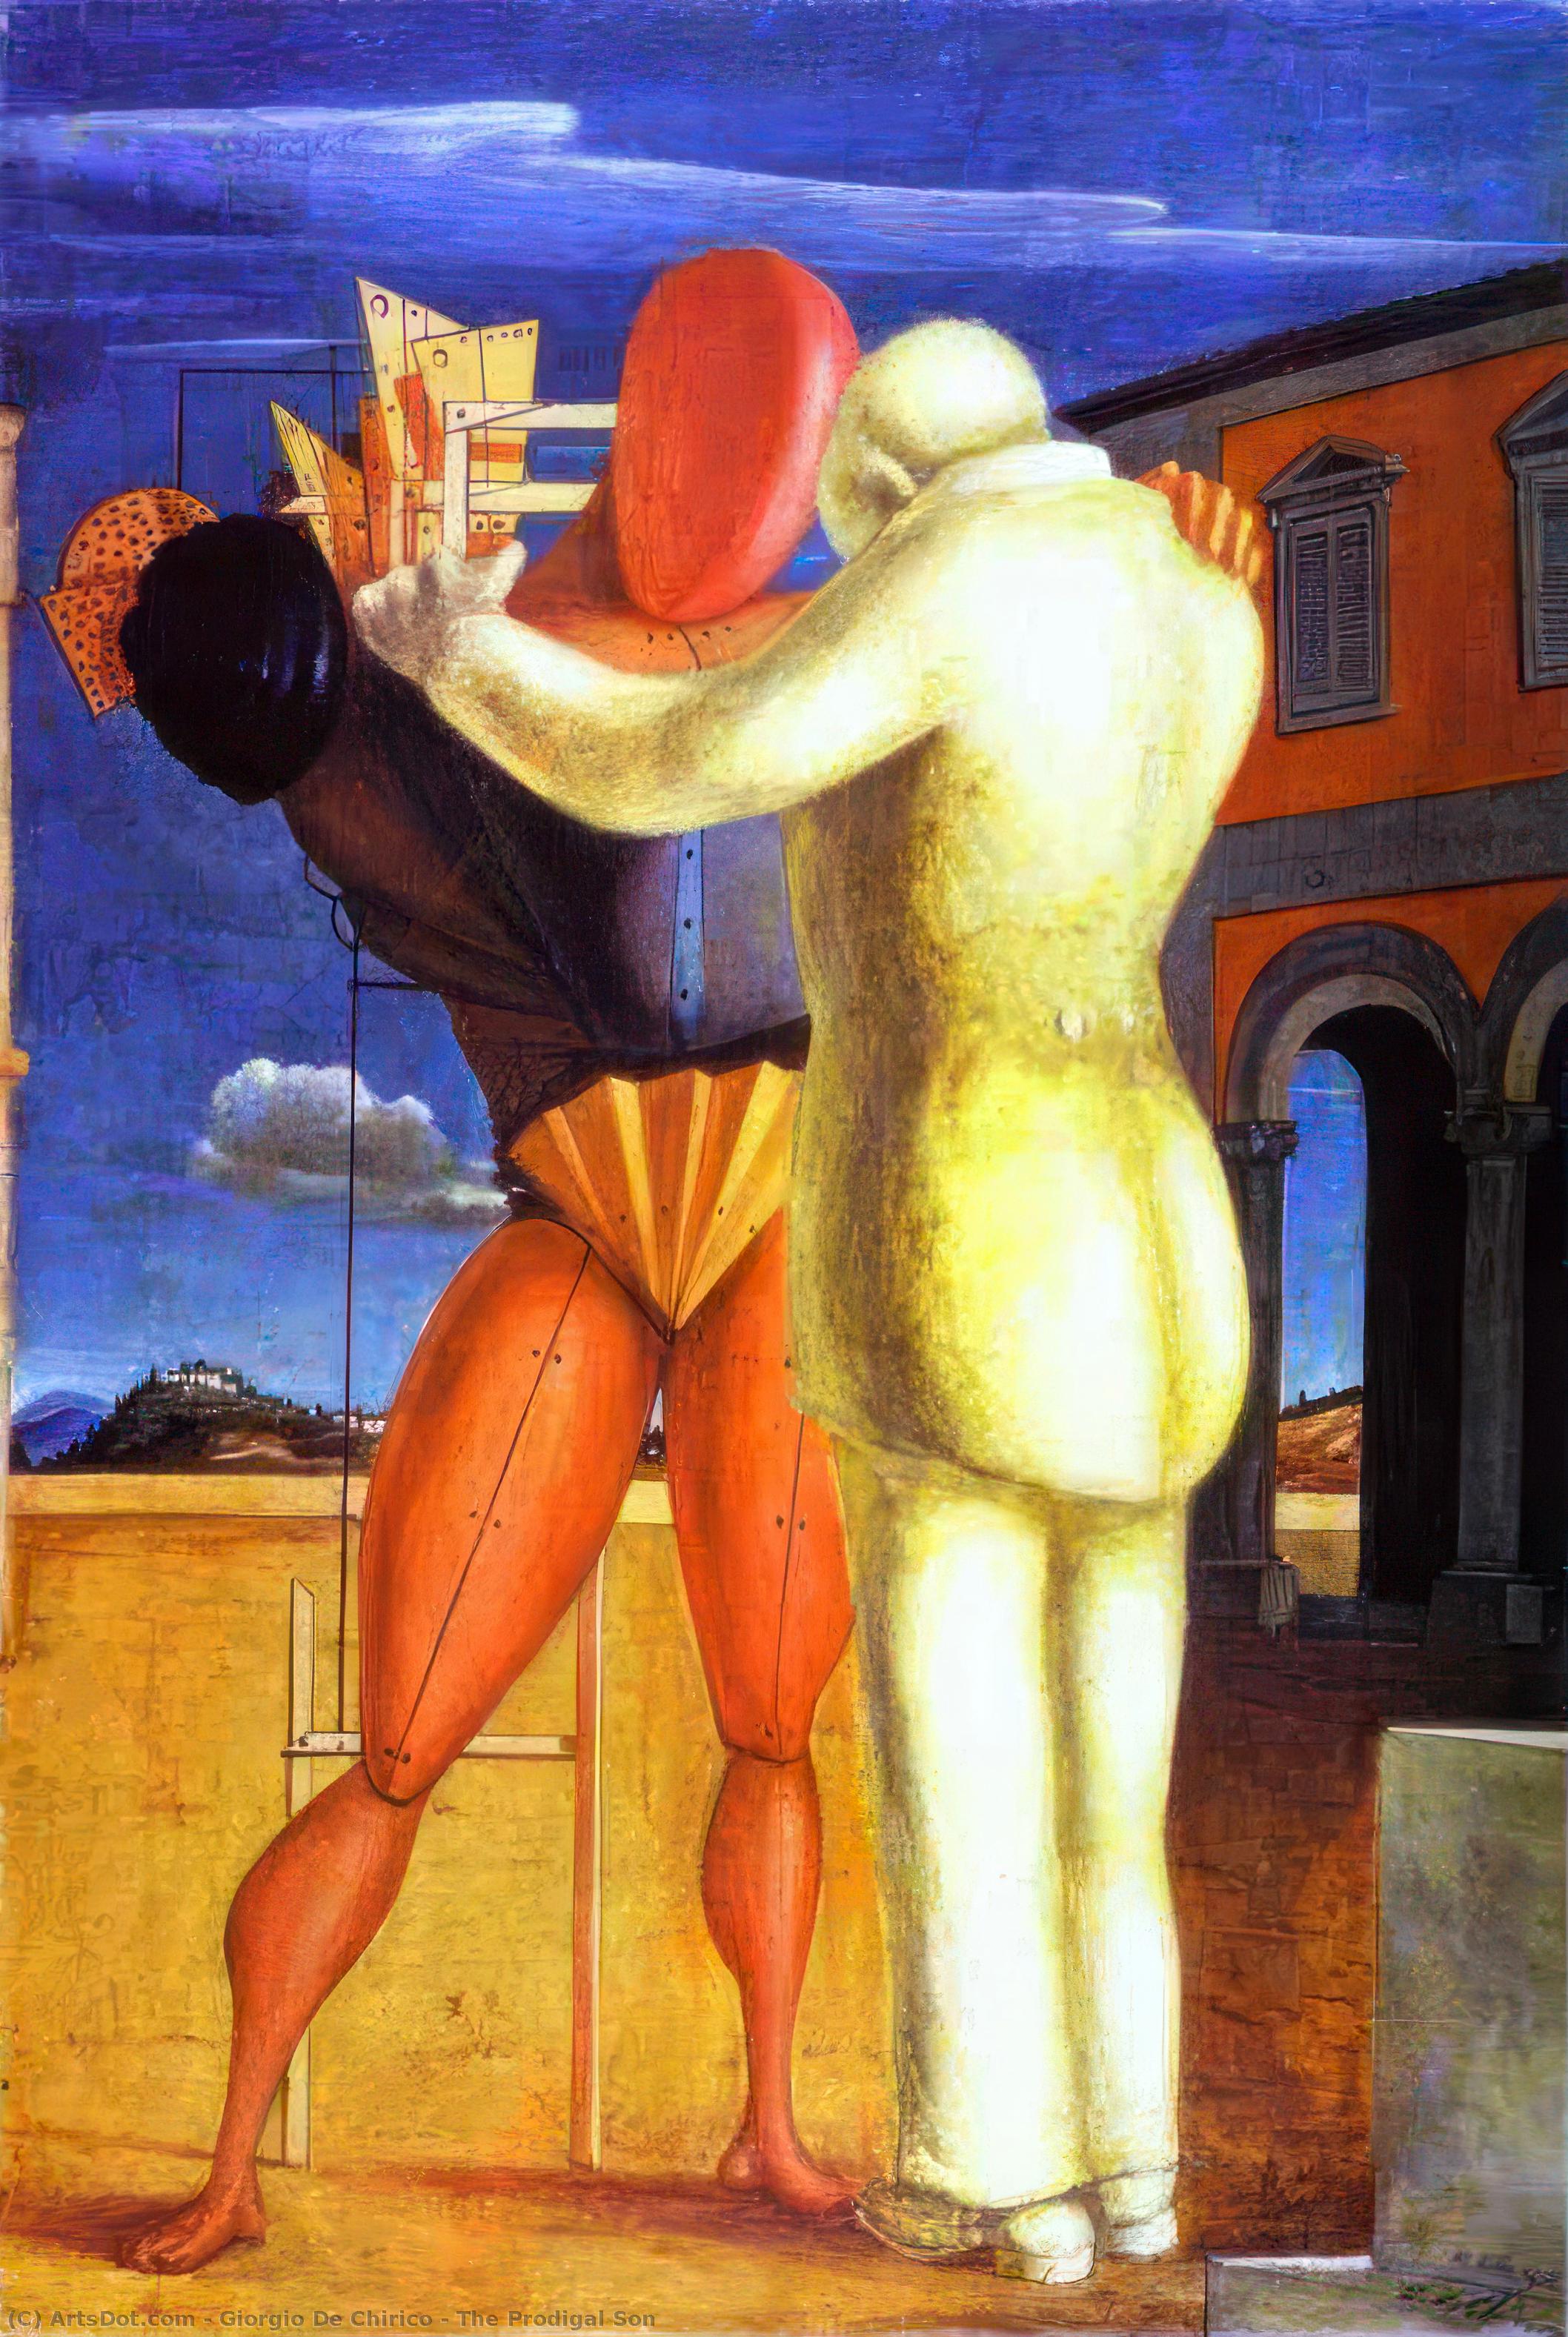 Compra Riproduzioni D'arte Del Museo Il Figlio Prodigale, 1922 di Giorgio De Chirico (Ispirato da) (1888-1978, Greece) | ArtsDot.com